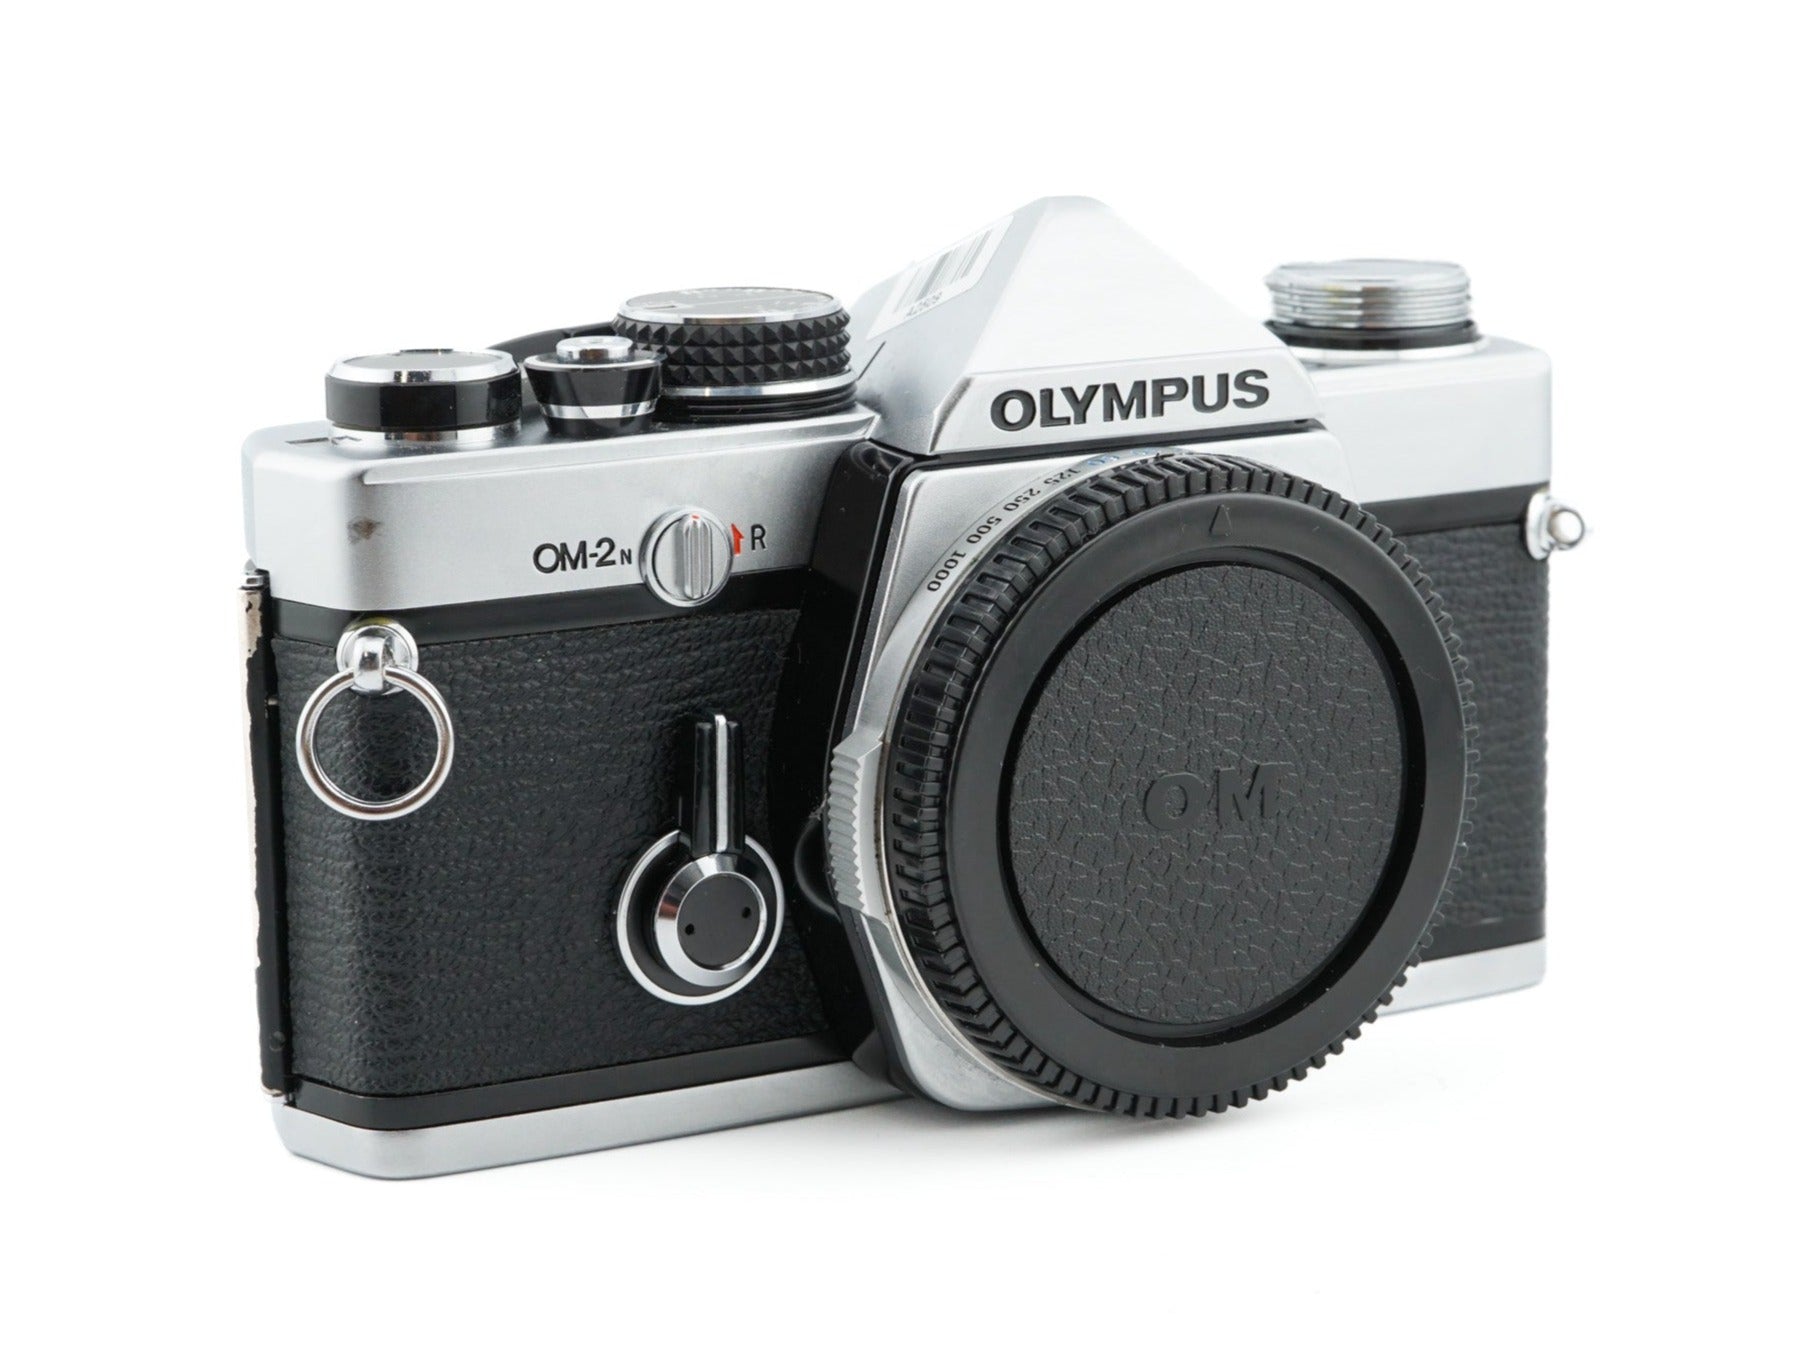 Olympus OM-2N - 35mm Film Camera - with 6 month warranty